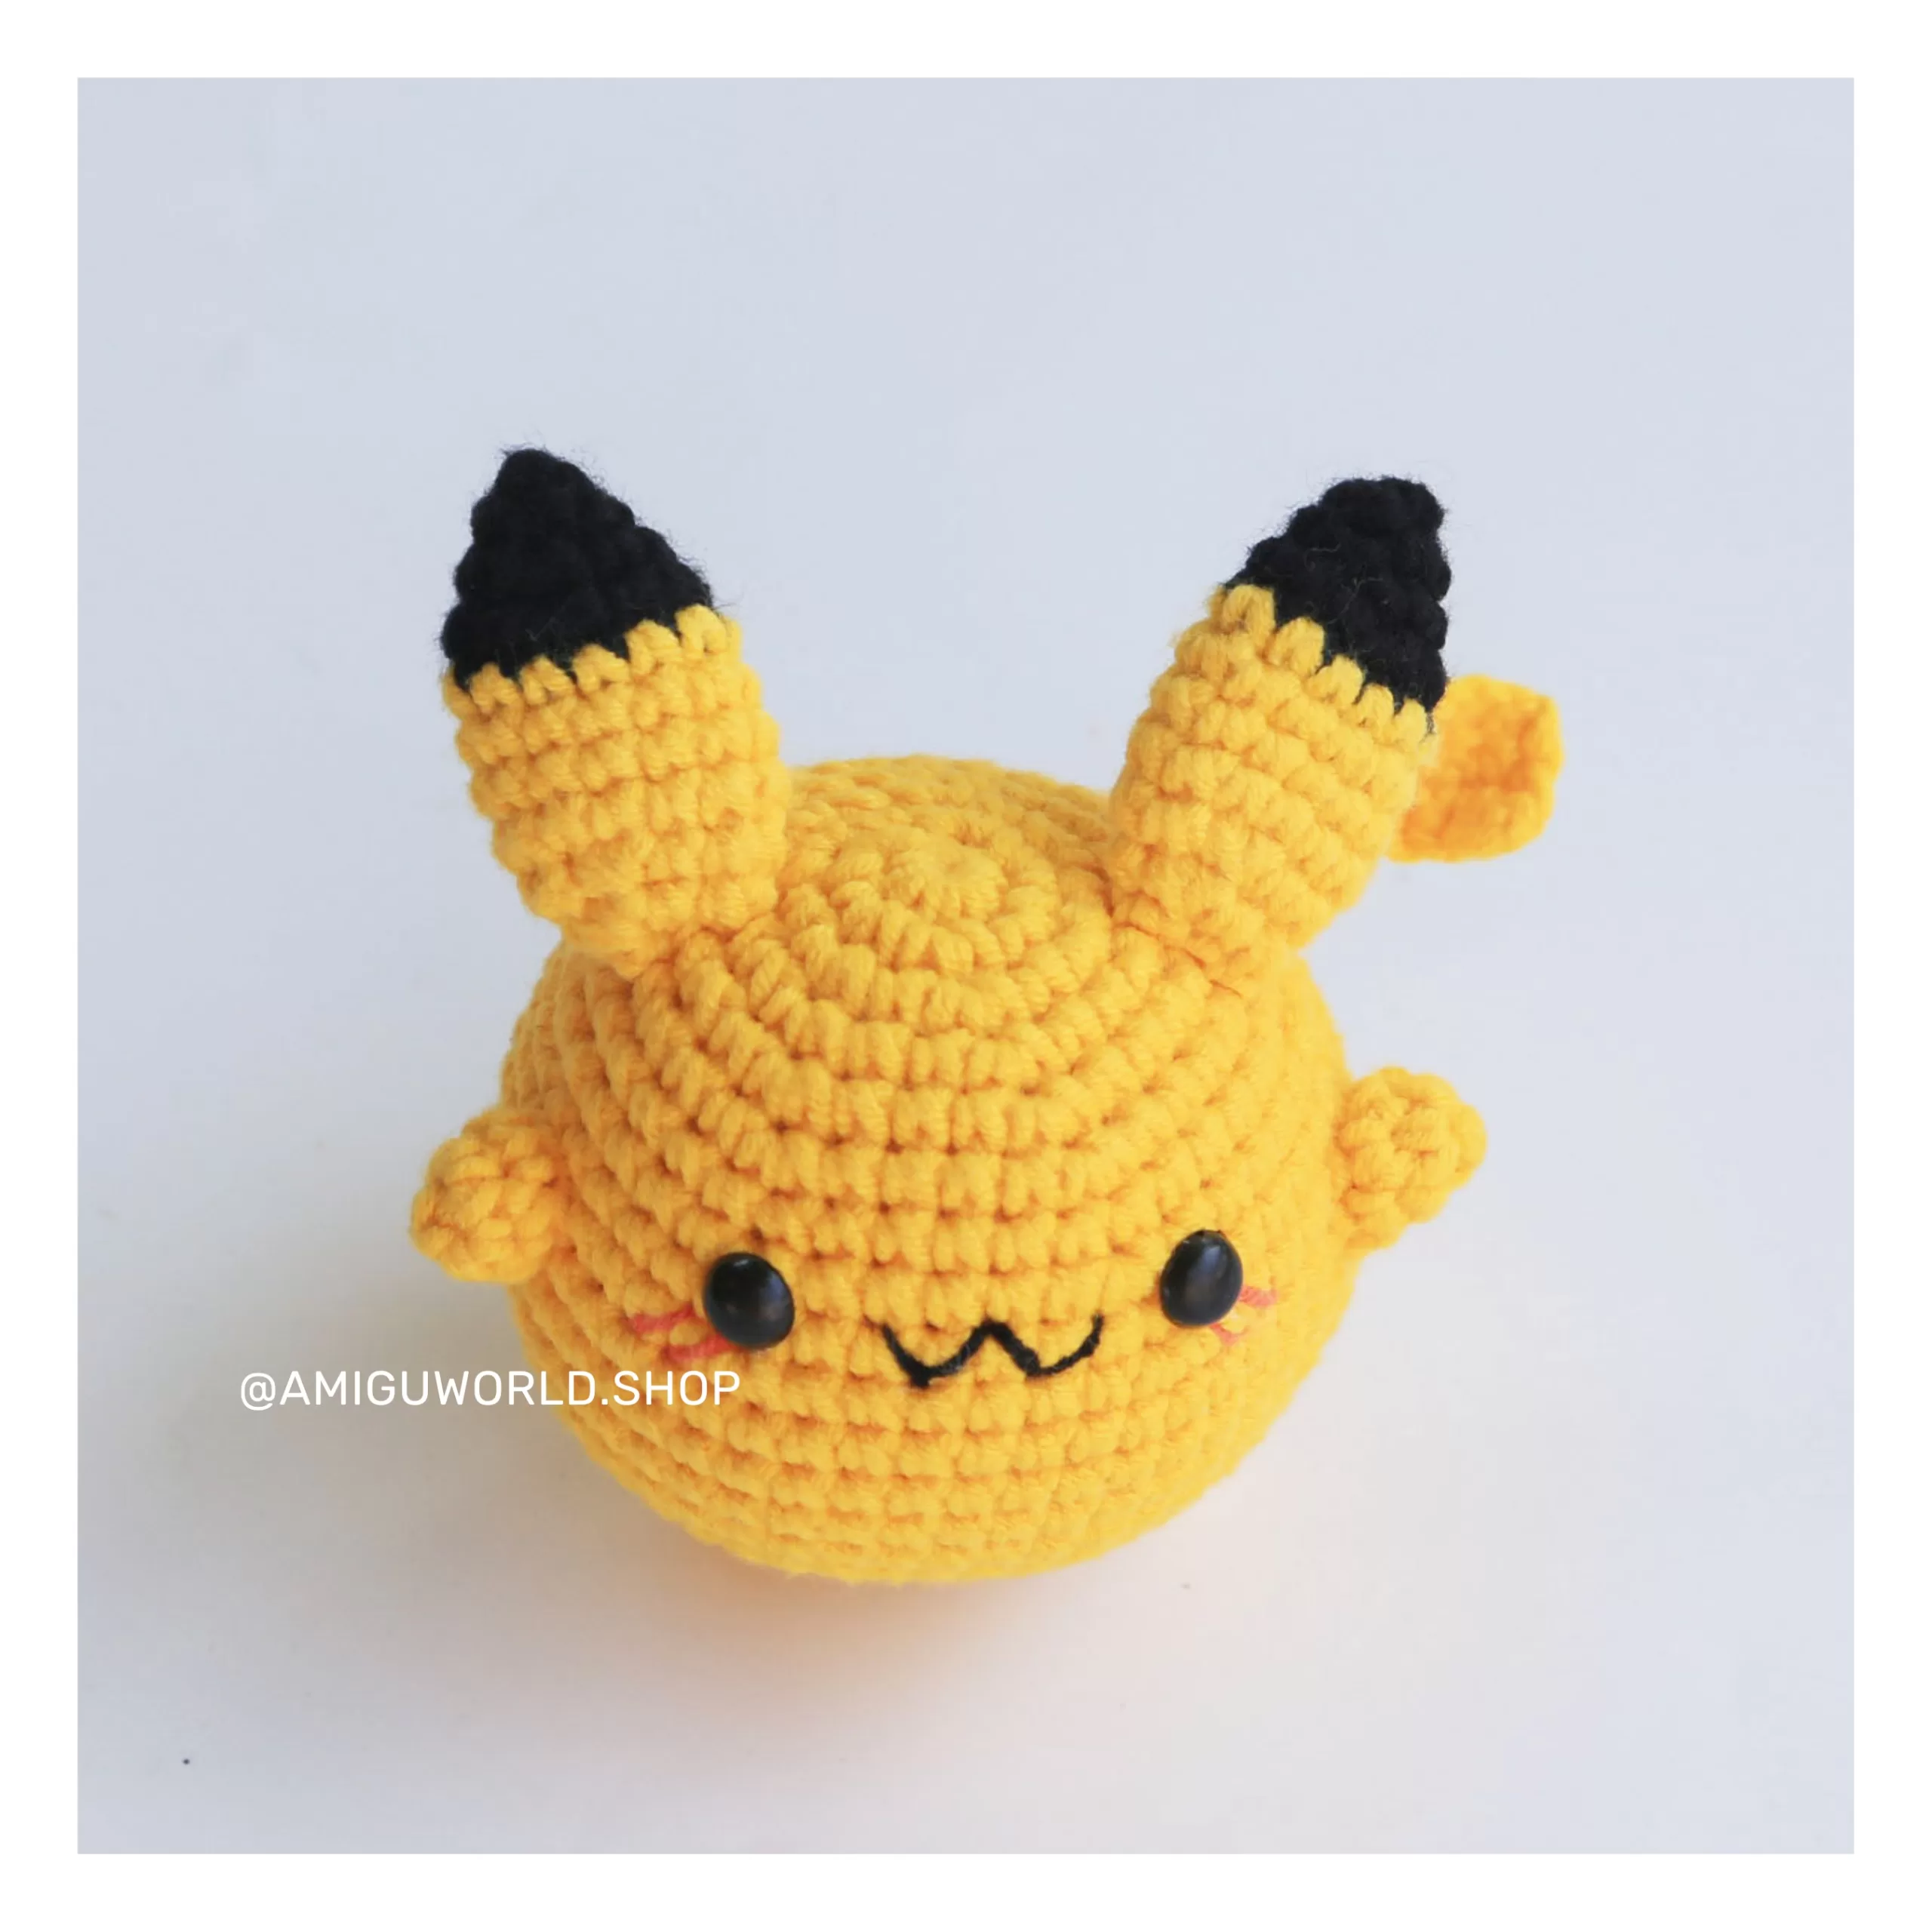 pikachu-amigurumi-doll-finished-by amiguworld (10)